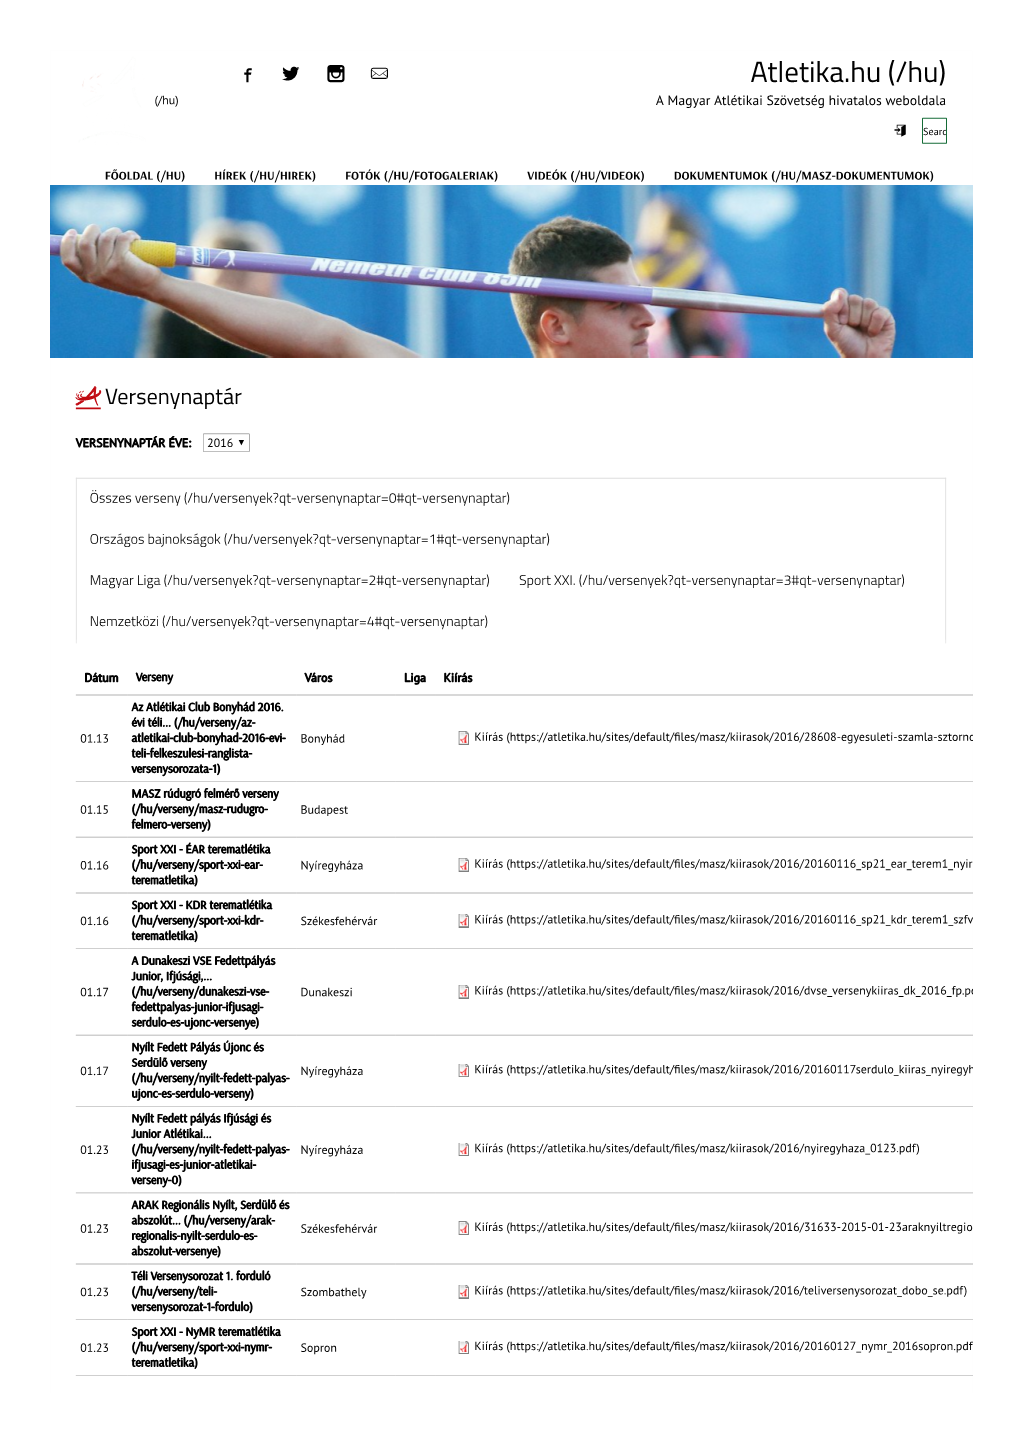 Atletika.Hu (/Hu) (/Hu) a Magyar Atlétikai Szövetség Hivatalos Weboldala